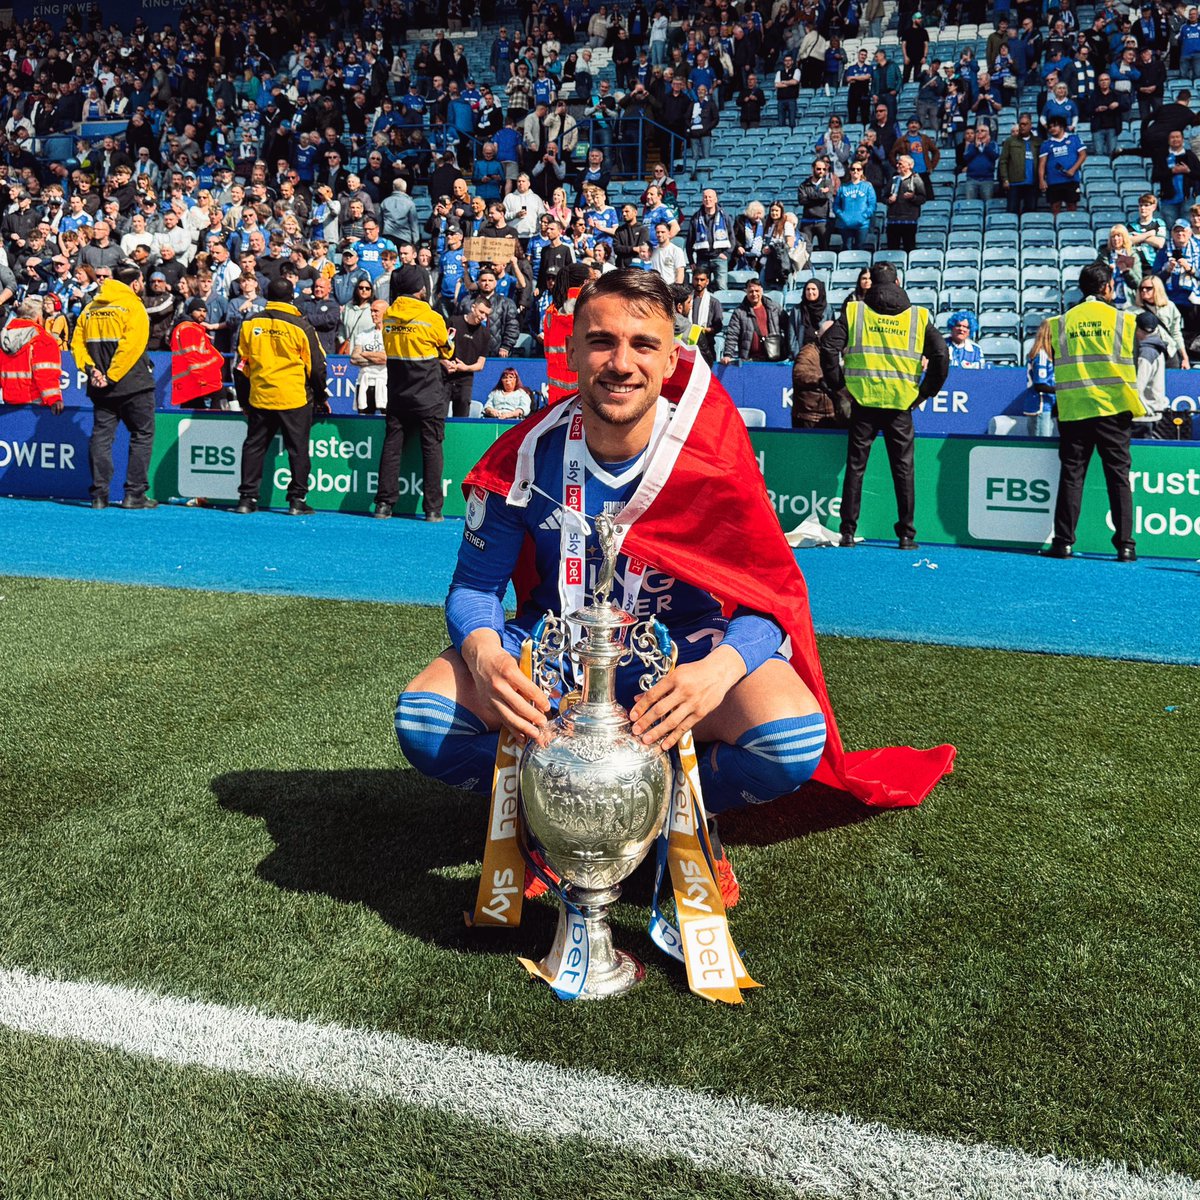 🇹🇷 Leicester City'de oynayan her Türk kupa sevinci yaşadı 🦊 Muzzy İzzet 🏆🏆 Lig Kupası (96/97, 99/2000) 🧱 Çağlar Söyüncü 🏆 FA Cup (20/21) 🏆 Community Shield (21/22) 🎩 Cengiz Ünder 🏆 FA Cup (20/21) 🐬 Yunus Akgün 🆕 🏆 Championship (23/24) AYAĞIMIZ UĞURLU GELİYOR